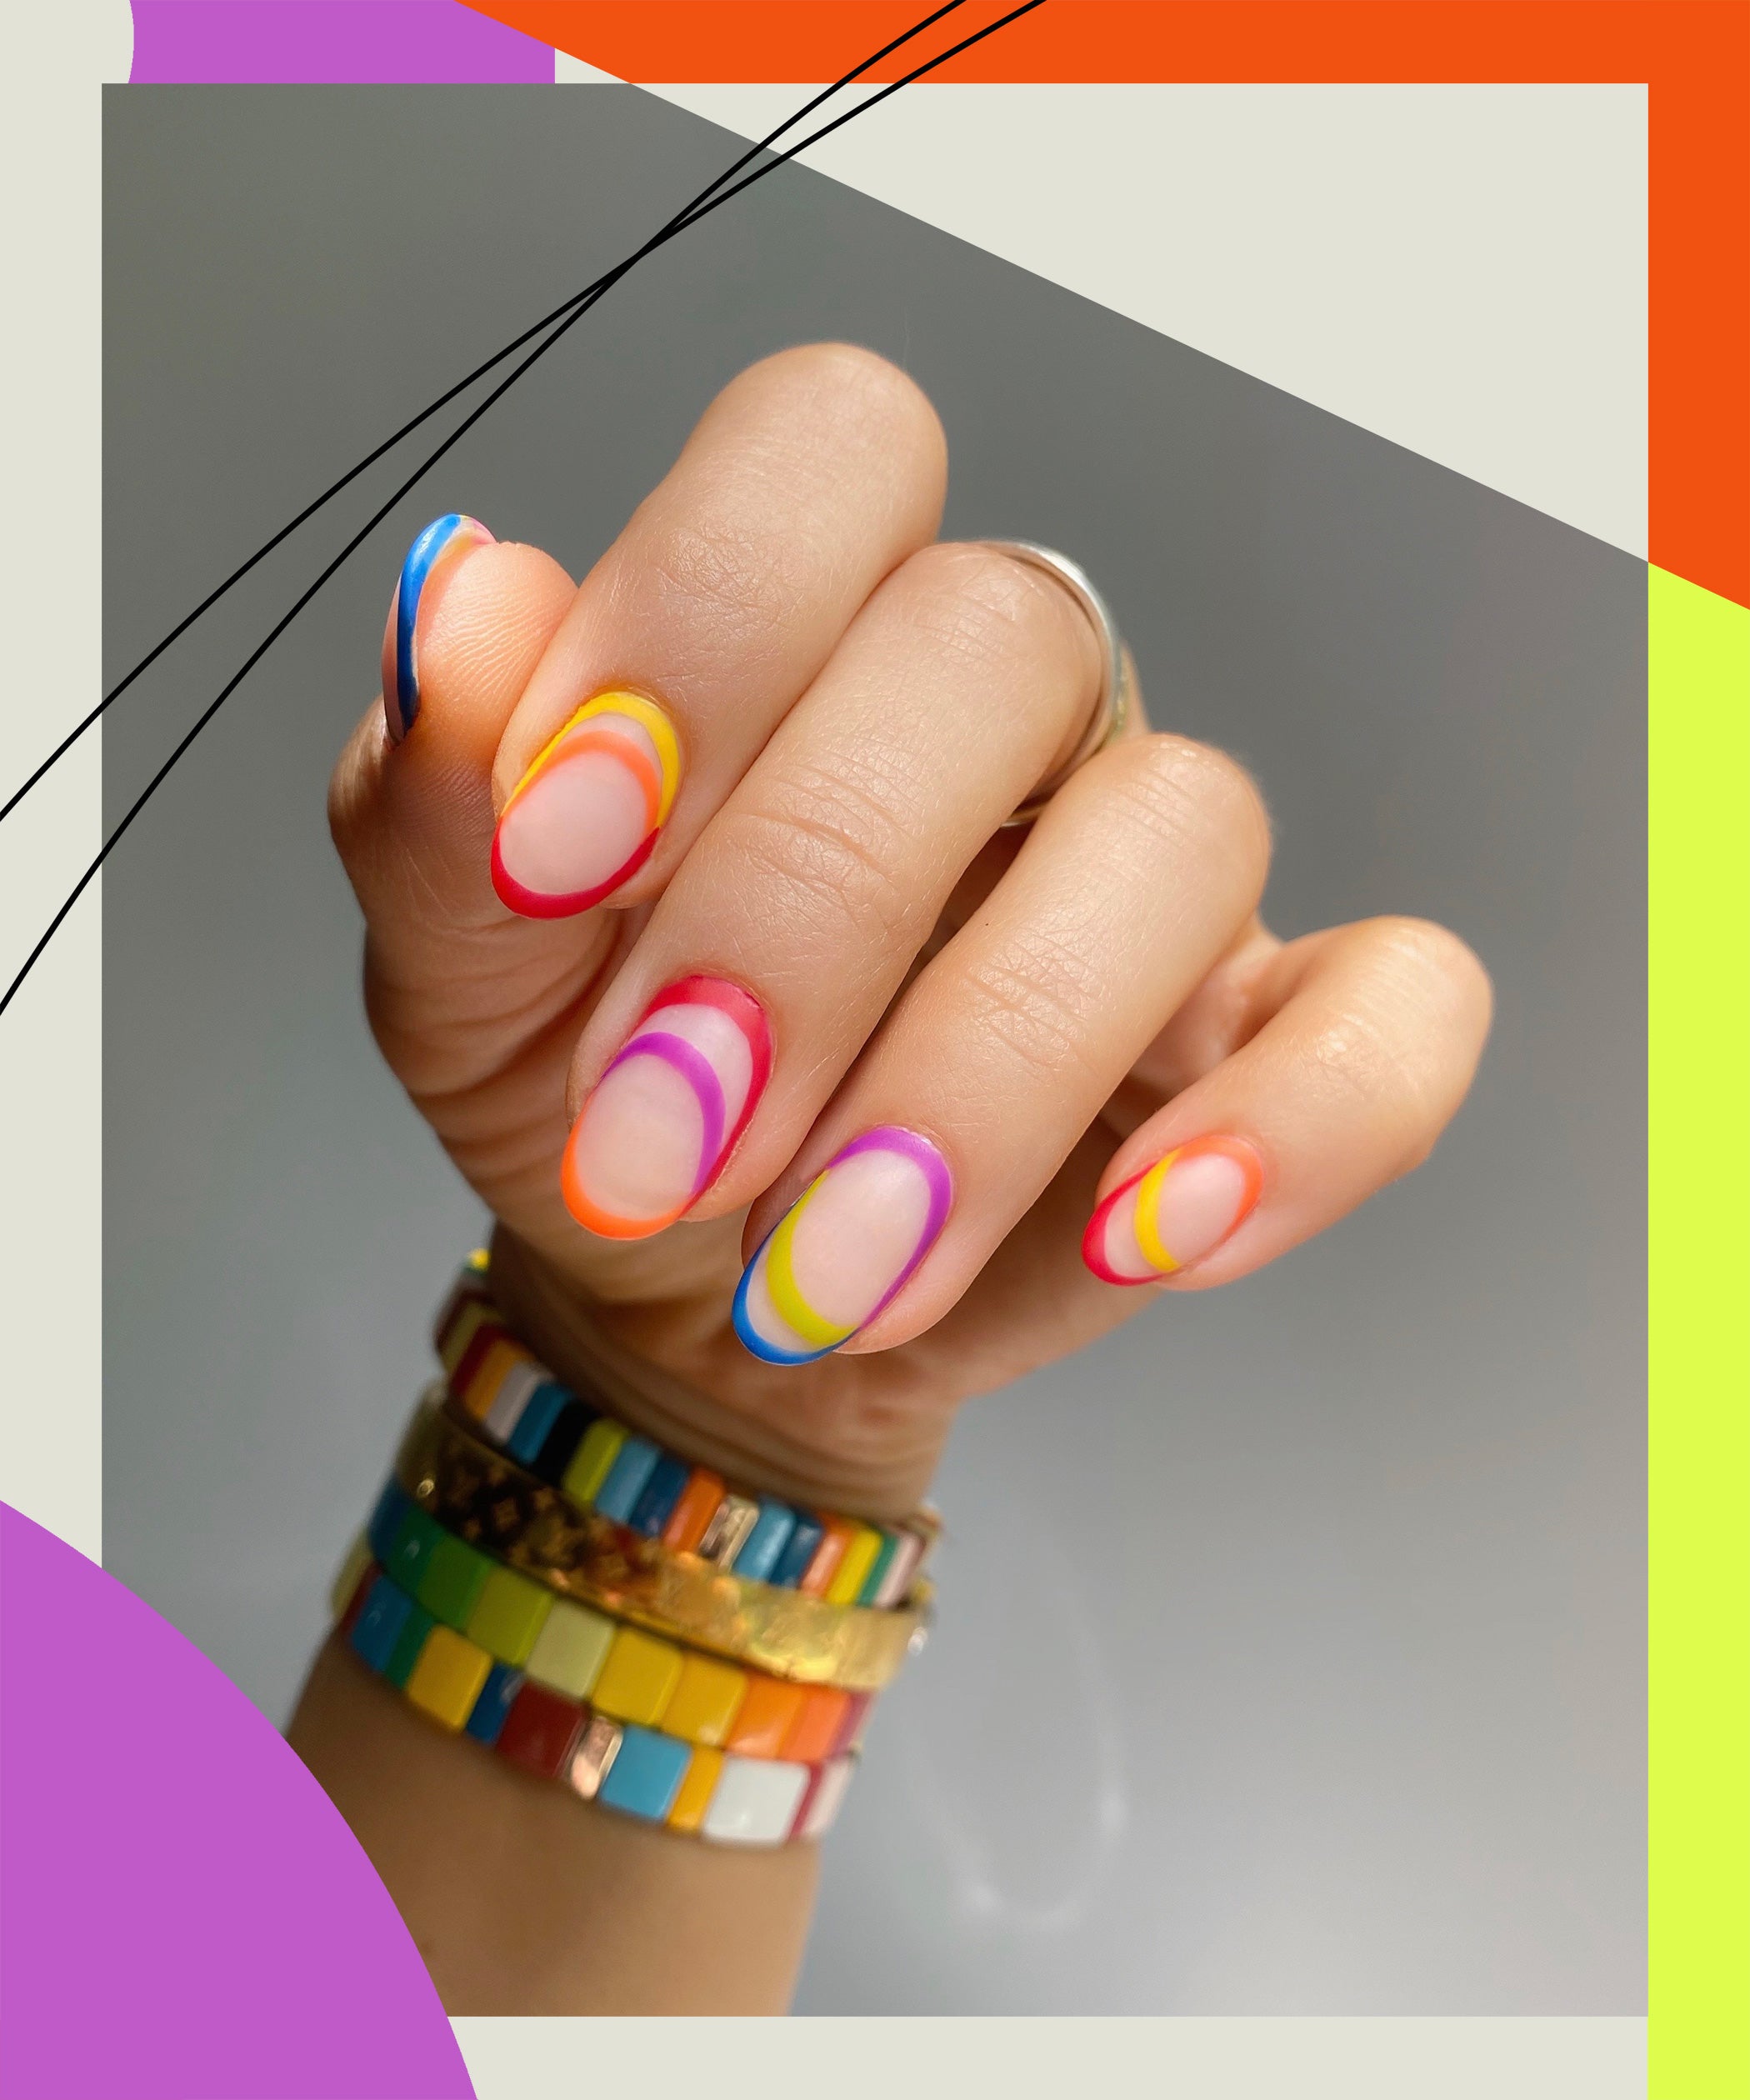 Manicure Pose stock image. Image of finger, polish, nail - 9722021